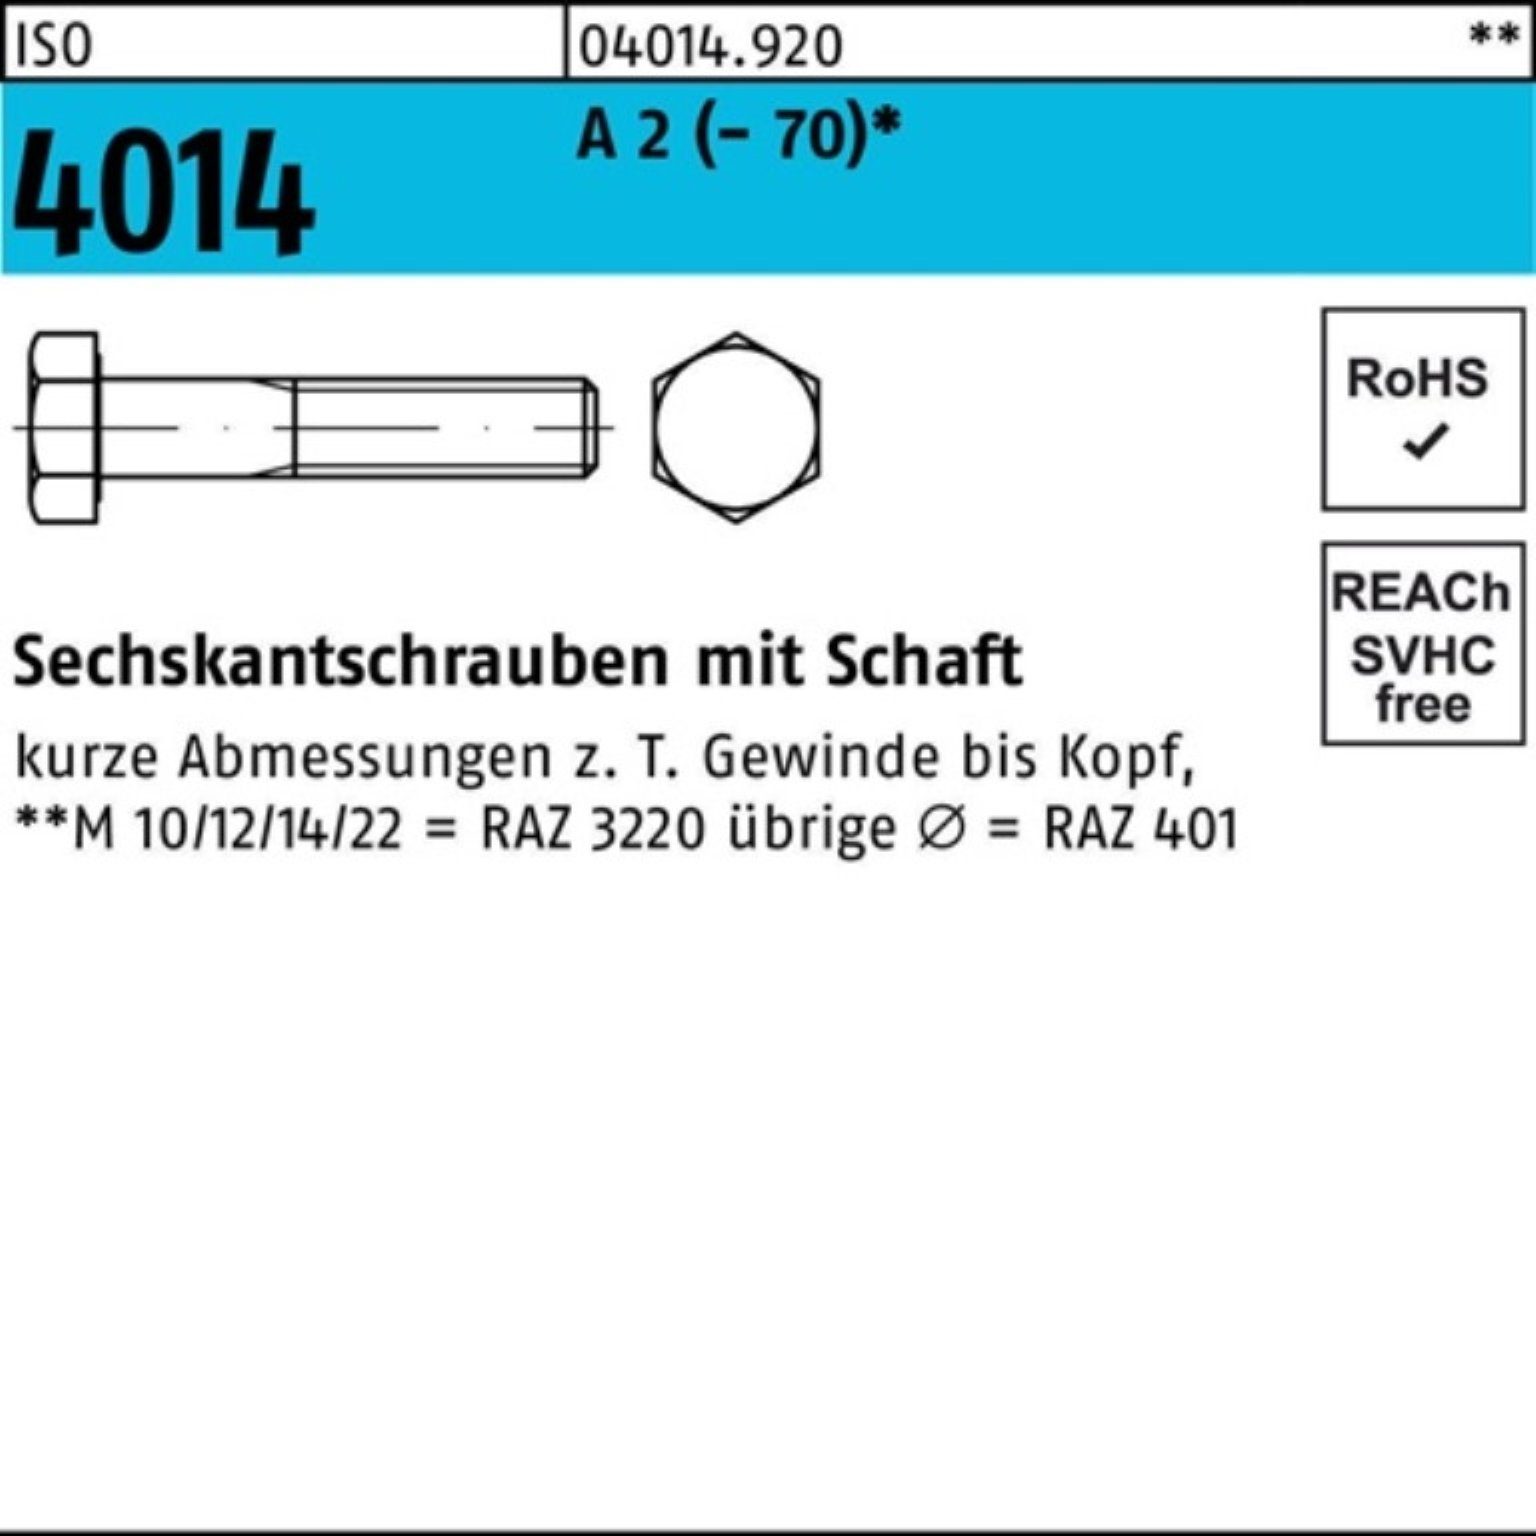 Bufab Sechskantschraube 100er Pack Sechskantschraube ISO 4014 Schaft M10x 55 A 2 (70) 50 St